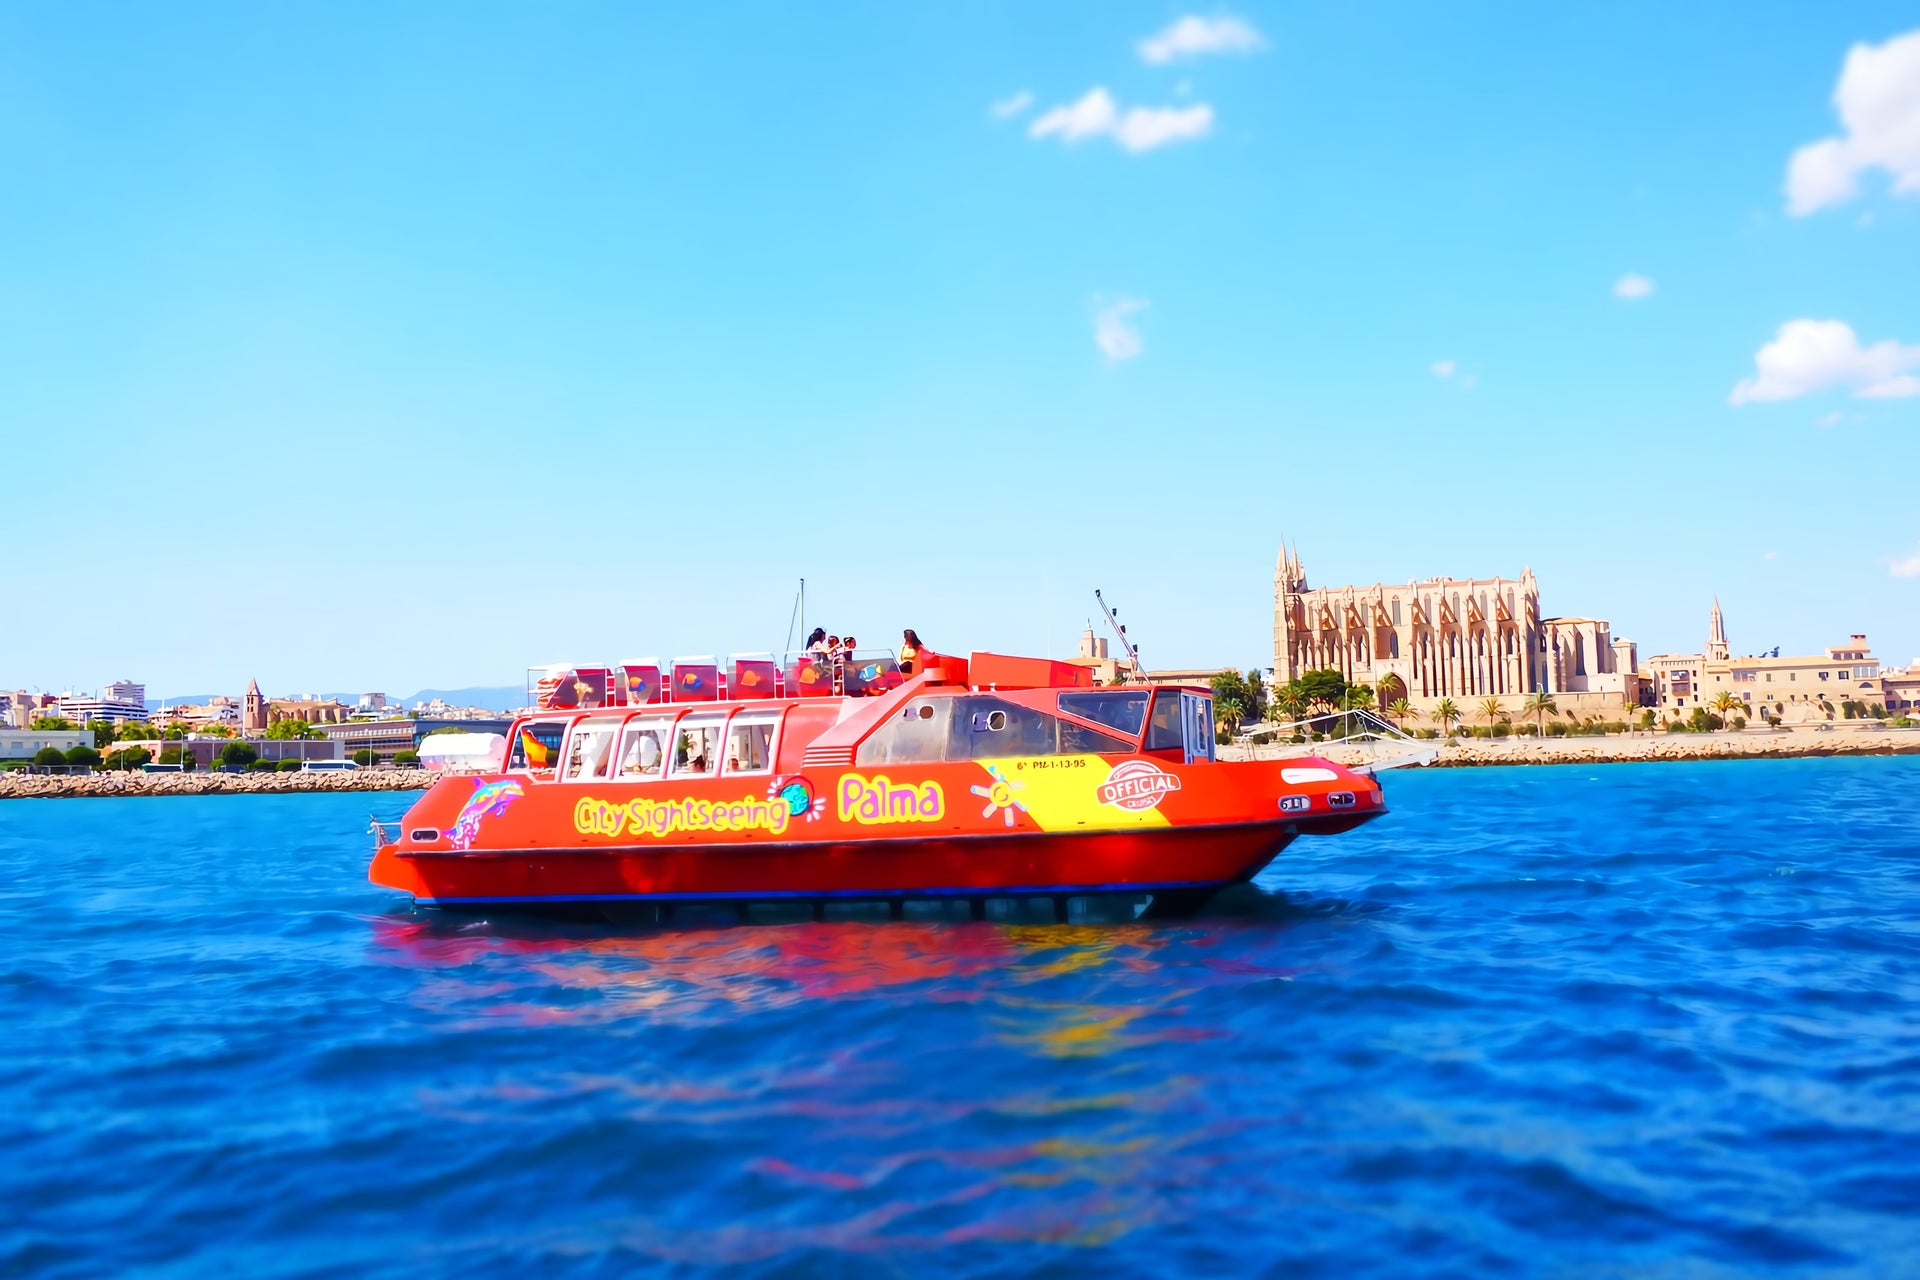 Barco turístico de Palma de Mallorca